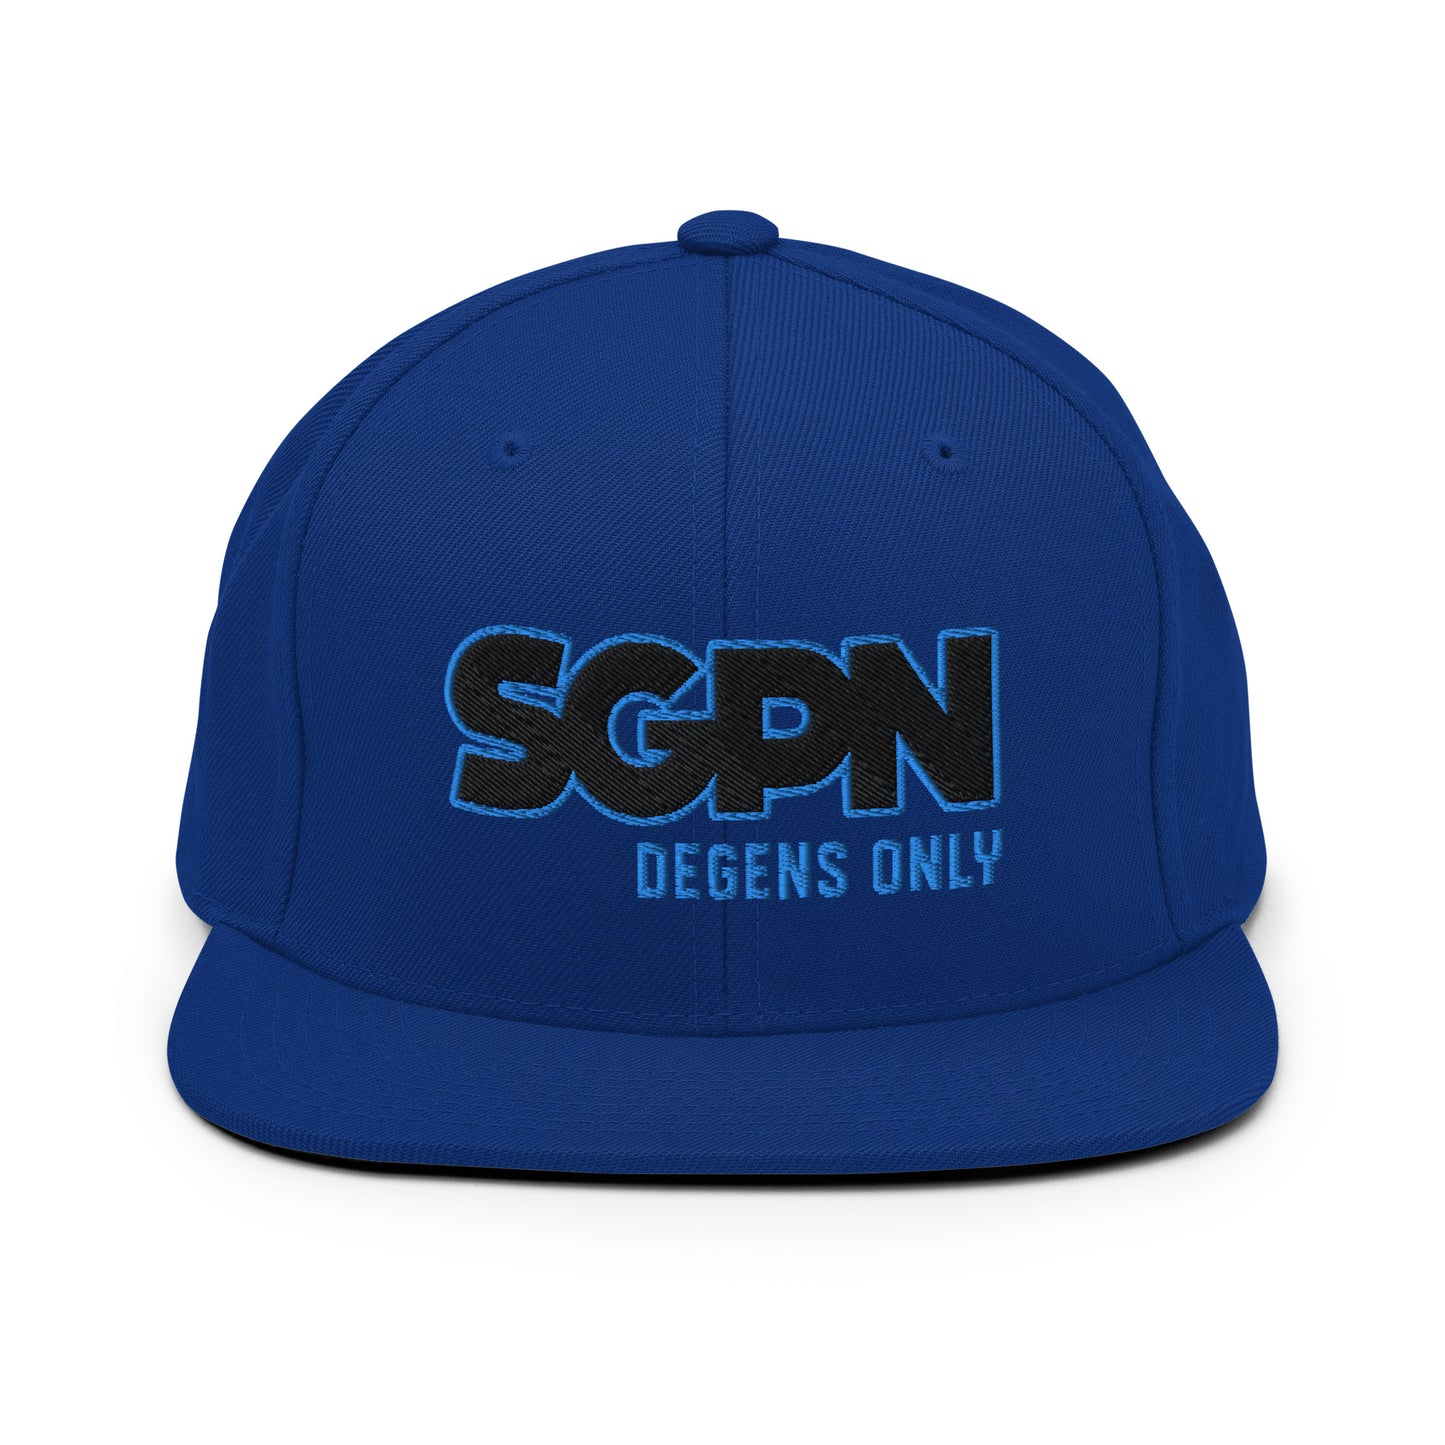 SGPN - Degens Only edition - Snapback Hat  (2 thread color)